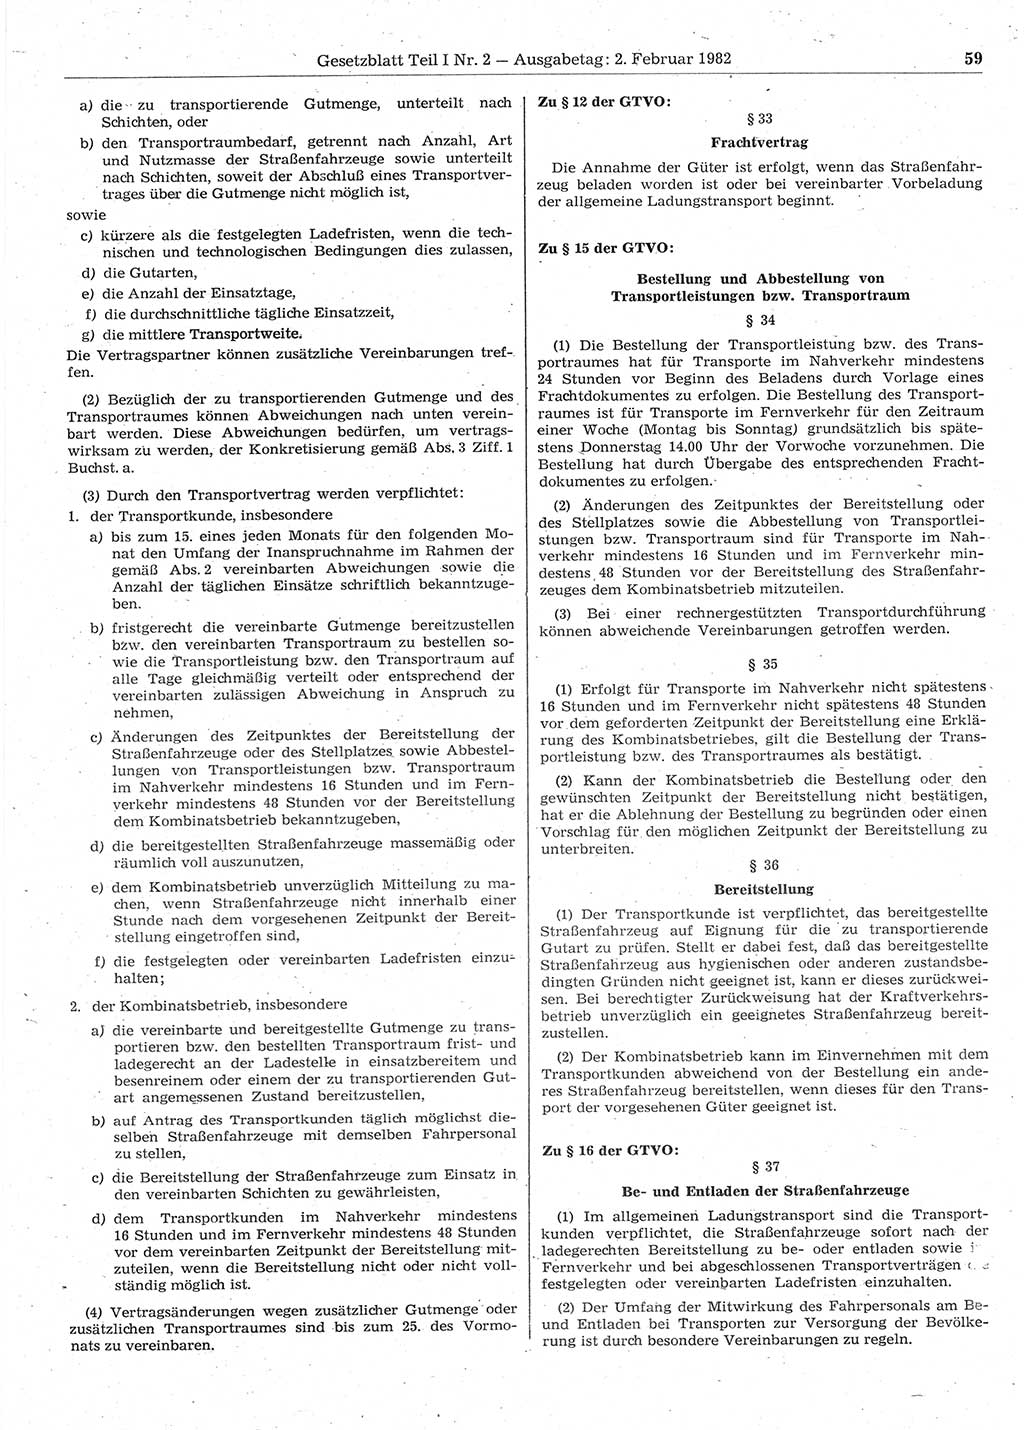 Gesetzblatt (GBl.) der Deutschen Demokratischen Republik (DDR) Teil Ⅰ 1982, Seite 59 (GBl. DDR Ⅰ 1982, S. 59)